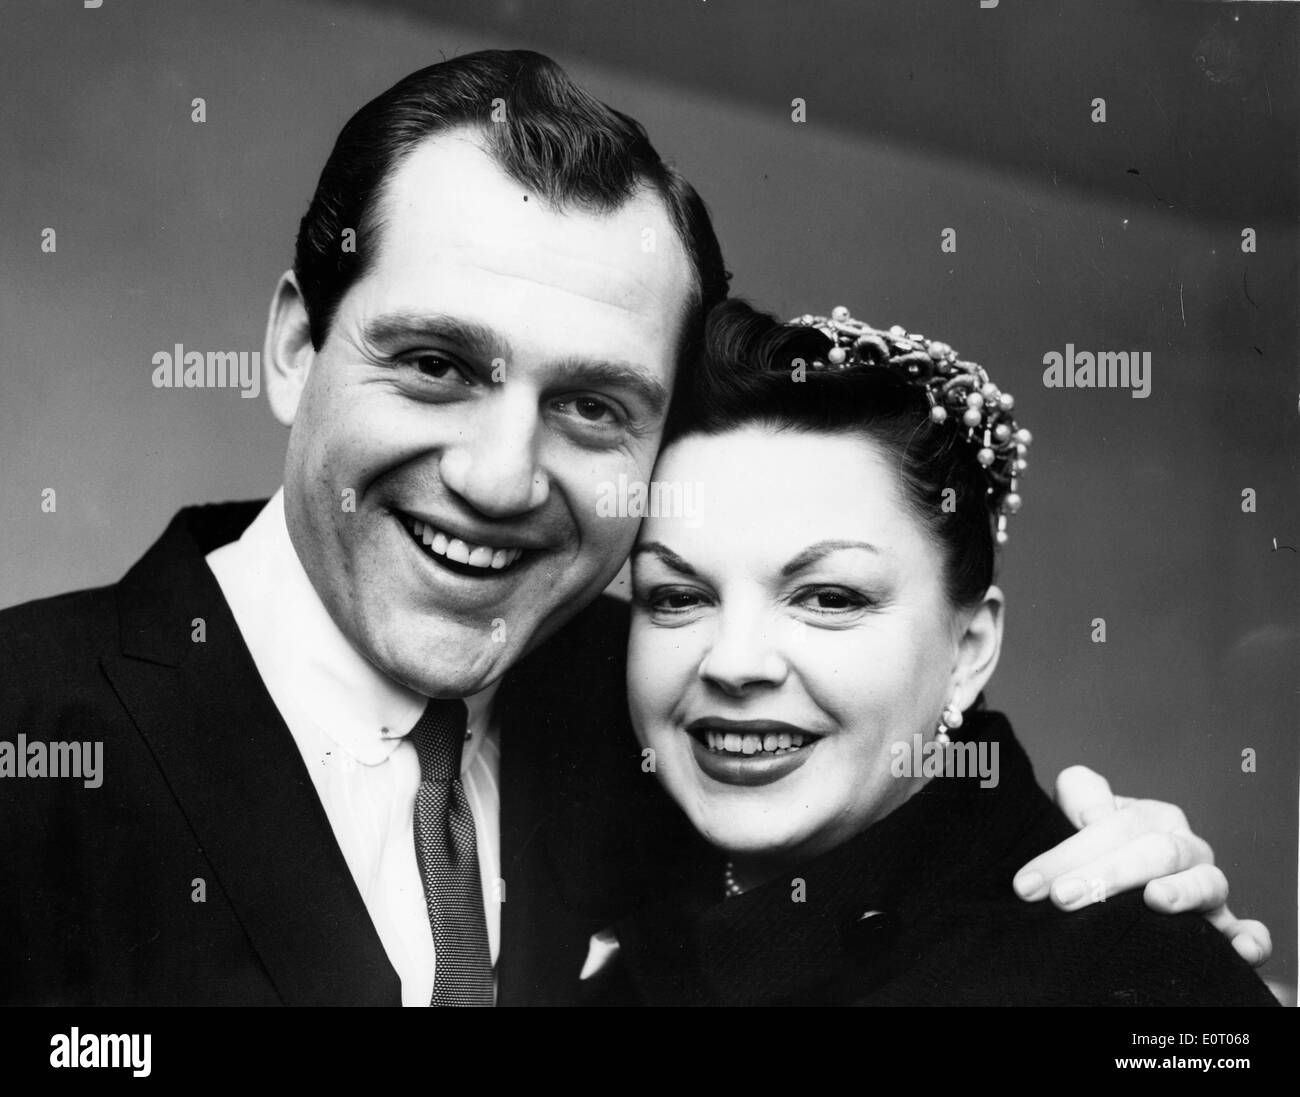 Actress Judy Garland with a man Stock Photo